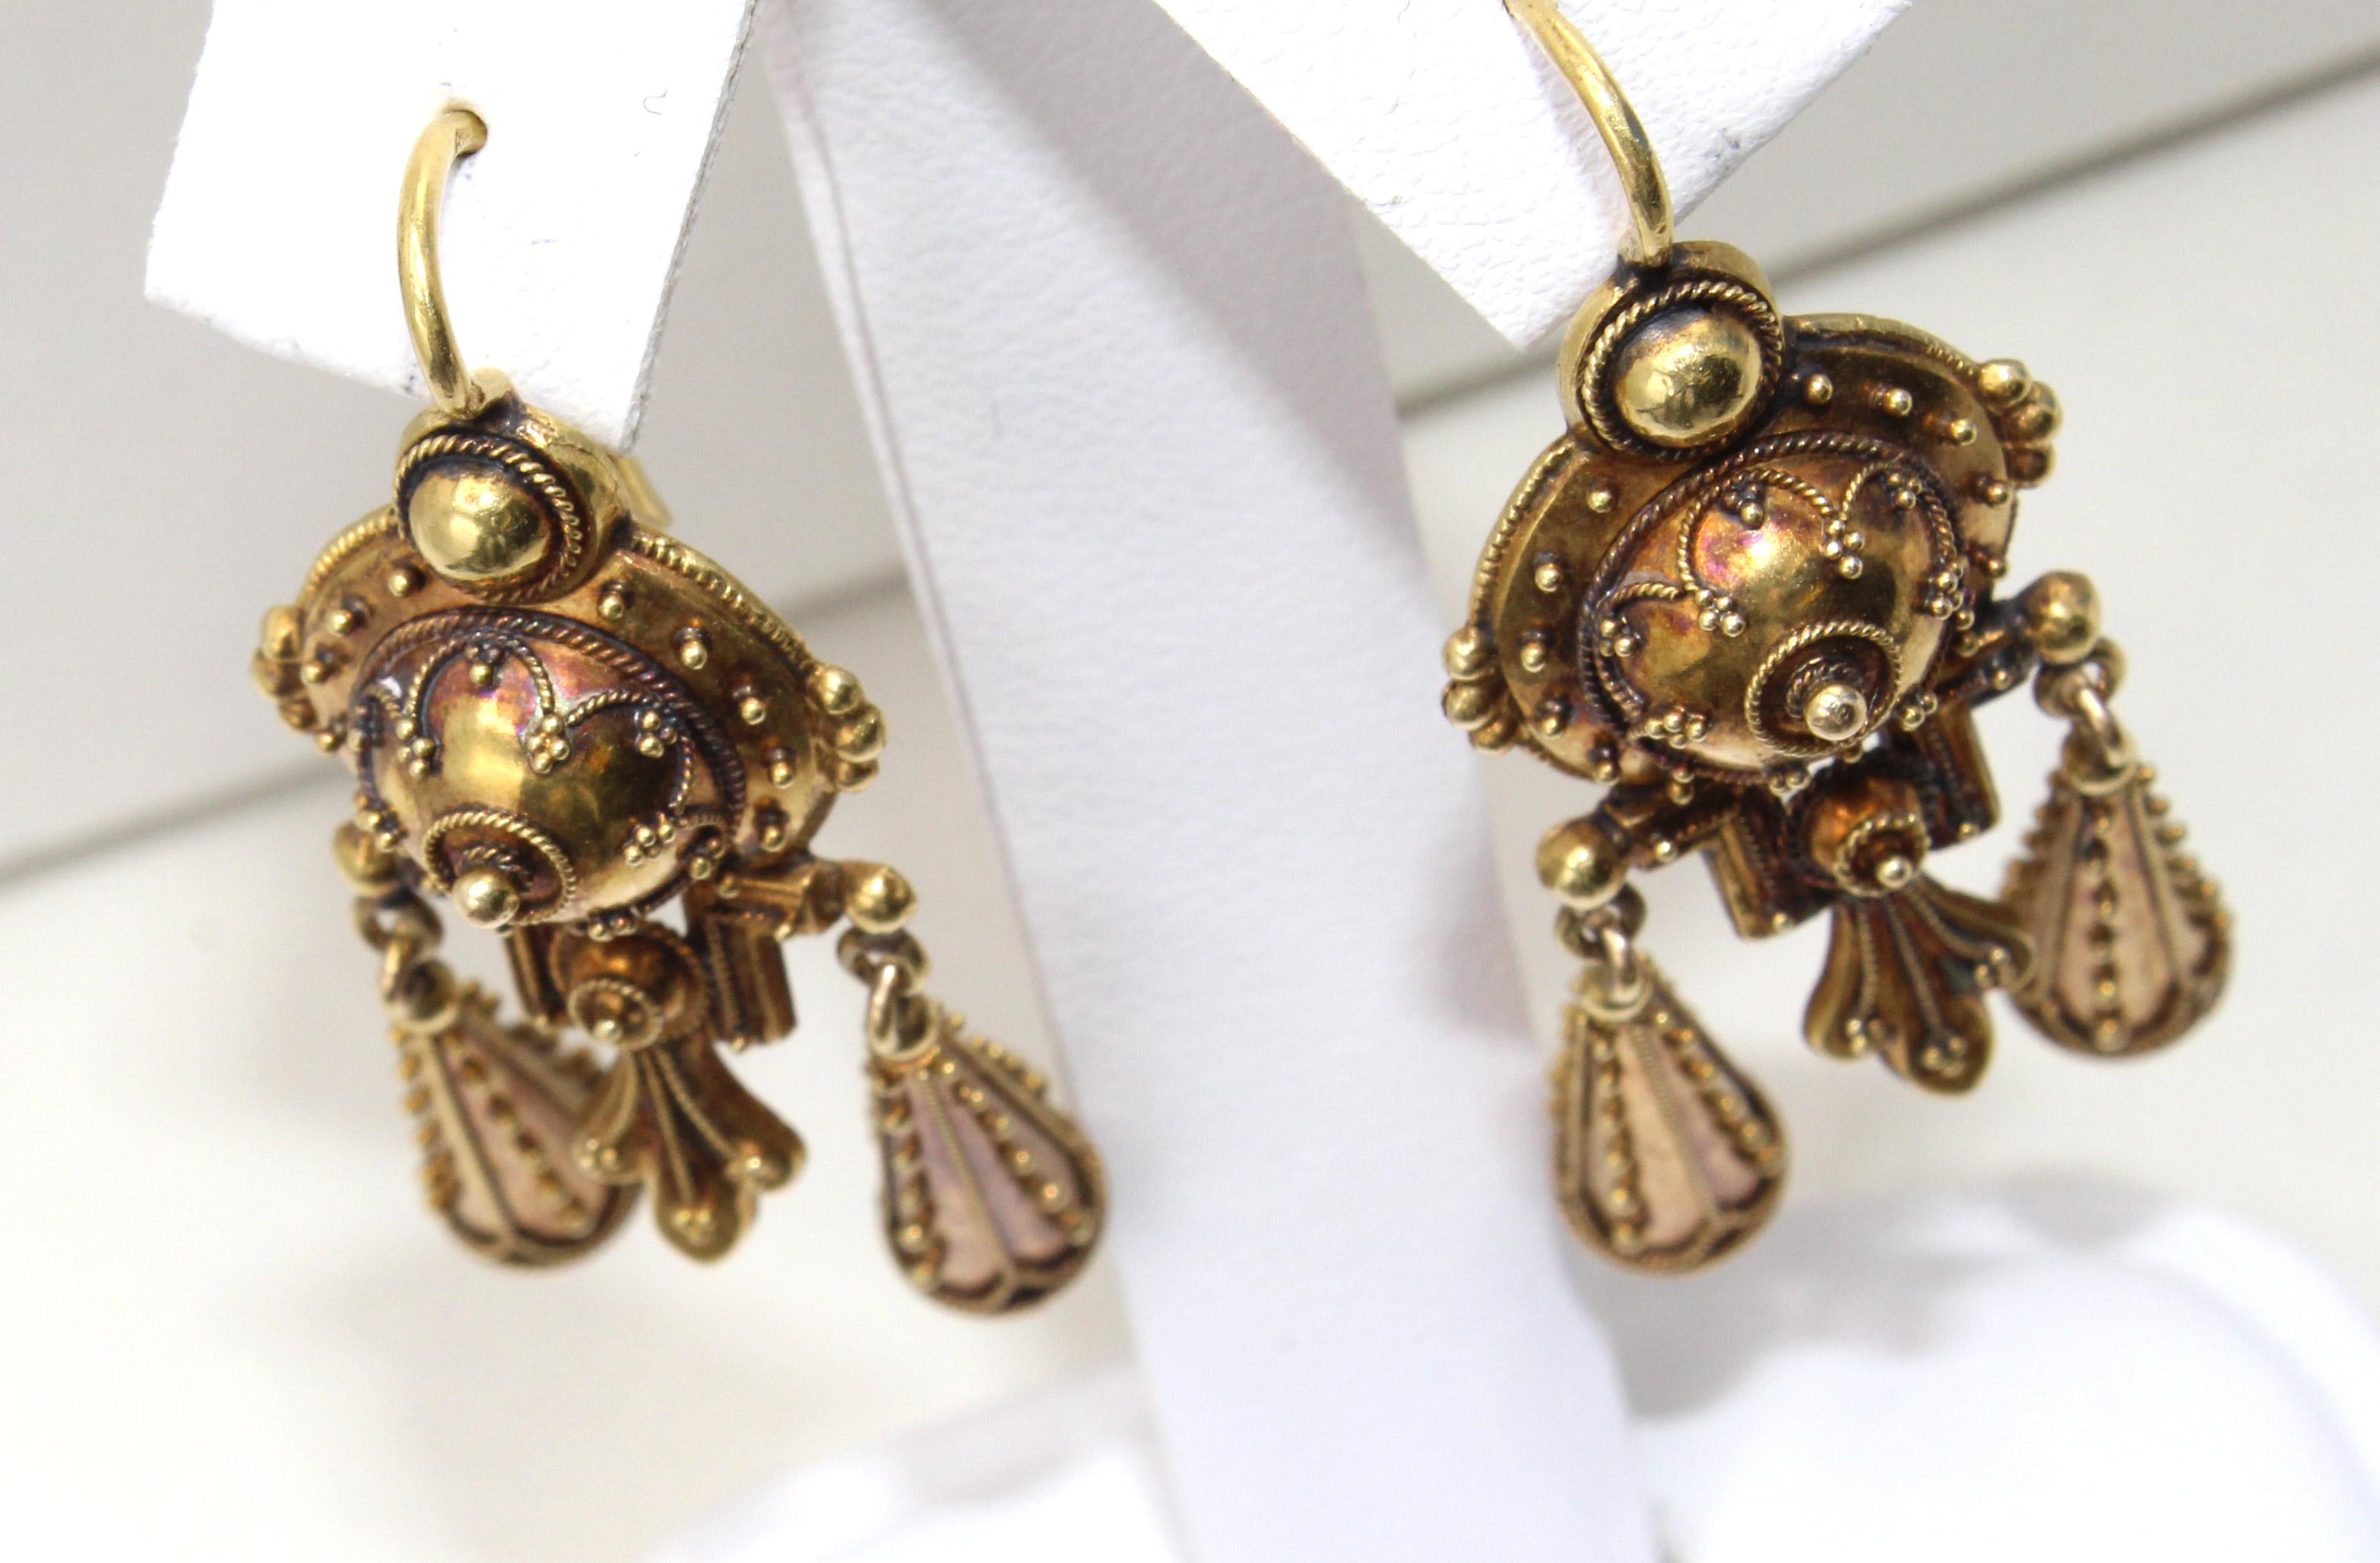 Magnifiquement conçues et fabriquées de main de maître, ces boucles d'oreilles françaises datant d'environ 1880 reflètent la première période du renouveau étrusque en joaillerie. Des perles et des tresses en or finement détaillées donnent à ces